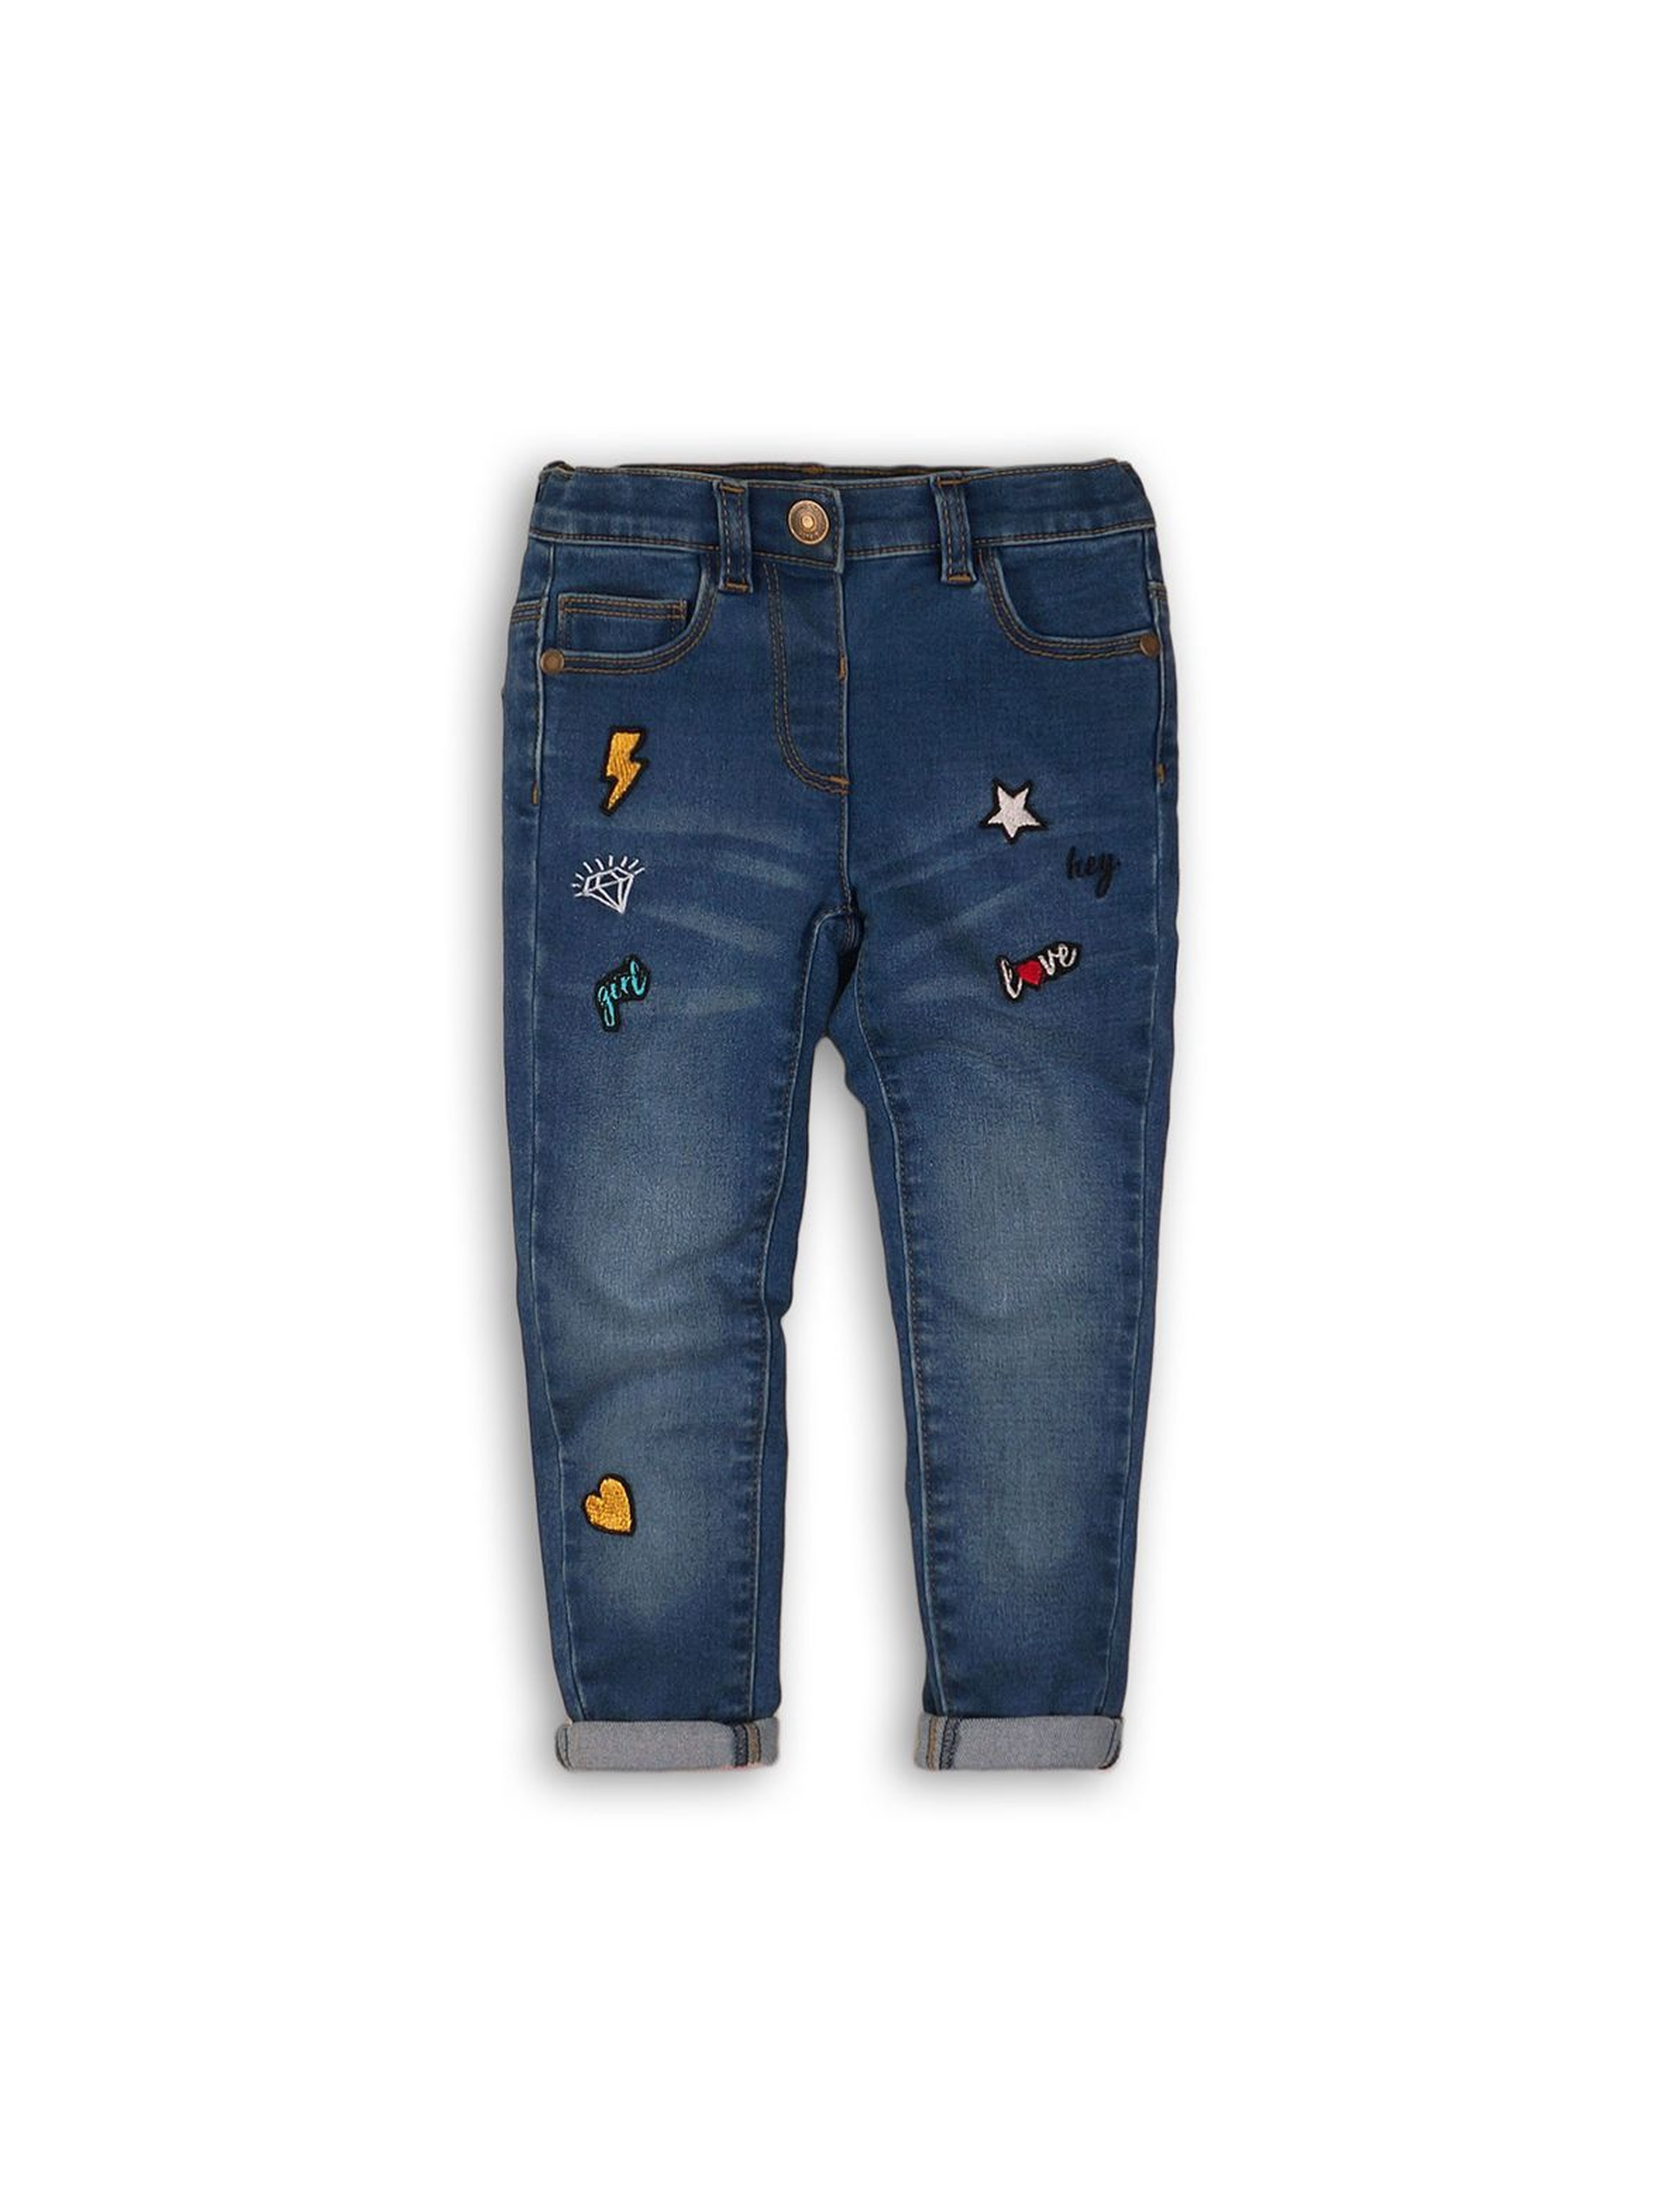 Spodnie dziecięce jeansowe- niebieskie z naszywkami